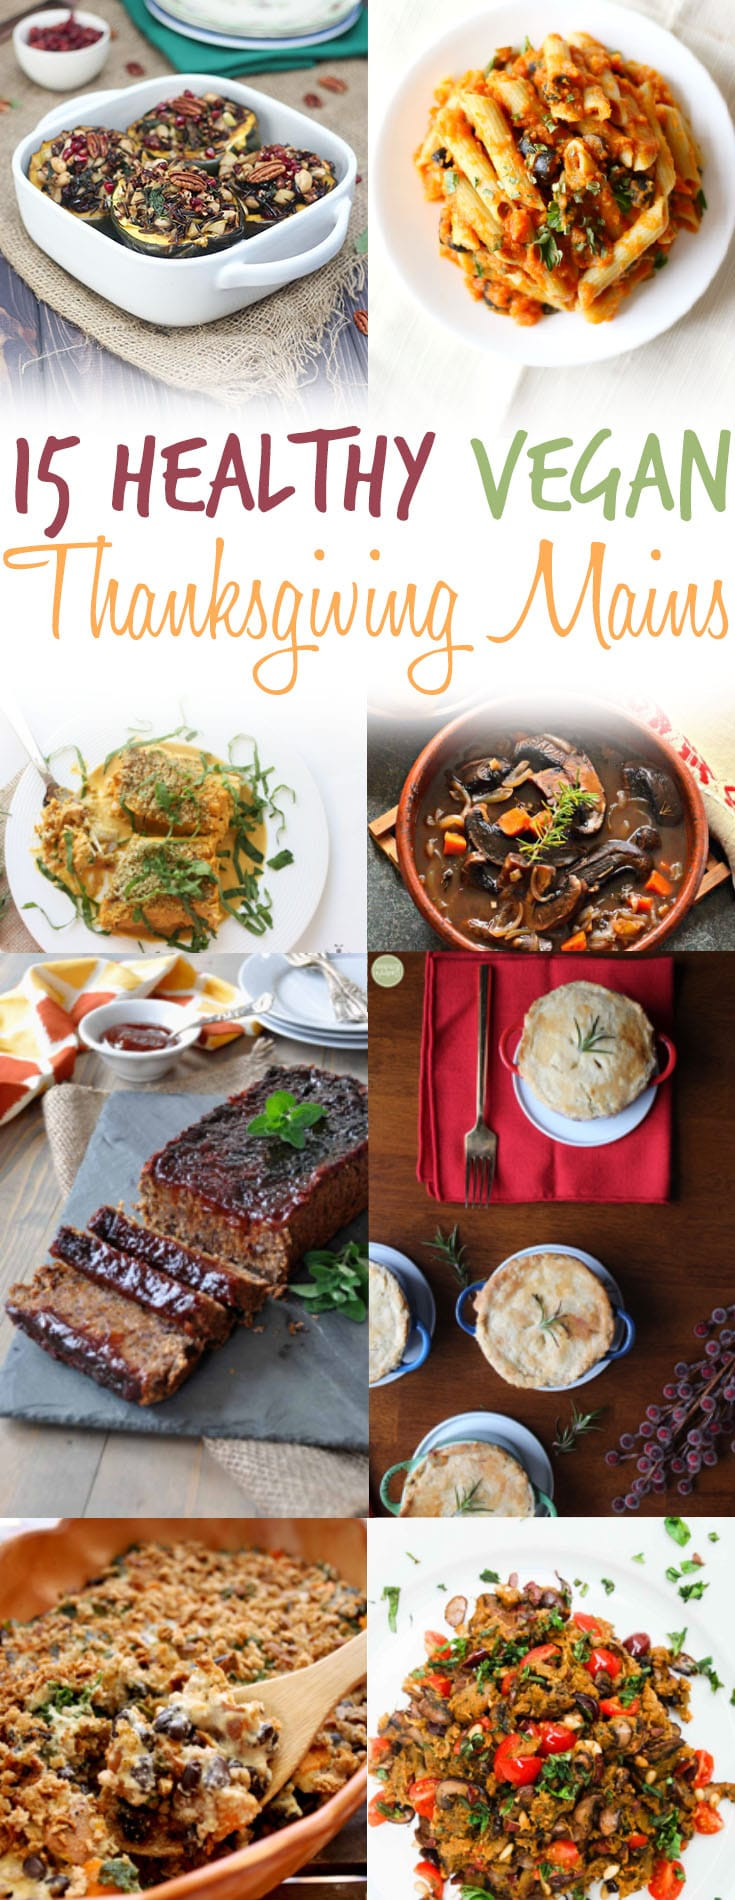 Vegan Main Dishes For Thanksgiving
 15 Vegan Thanksgiving Main Dishes